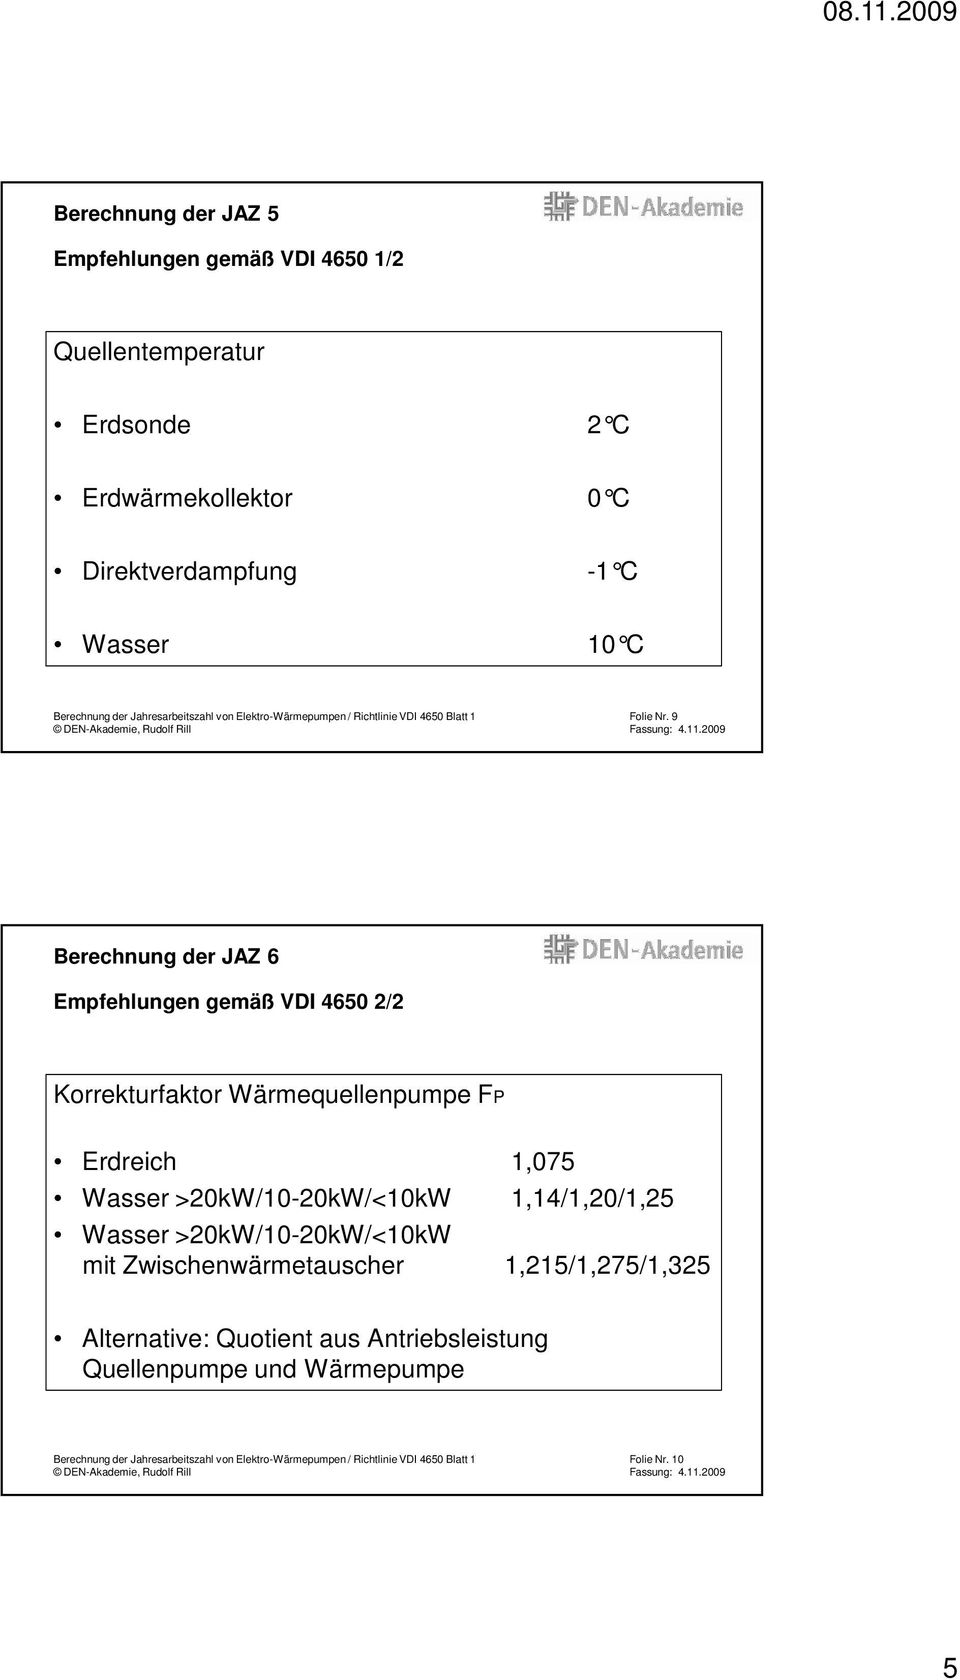 9 Berechnung der JAZ 6 Empfehlungen gemäß VDI 4650 2/2 Korrekturfaktor Wärmequellenpumpe FP Erdreich 1,075 Wasser